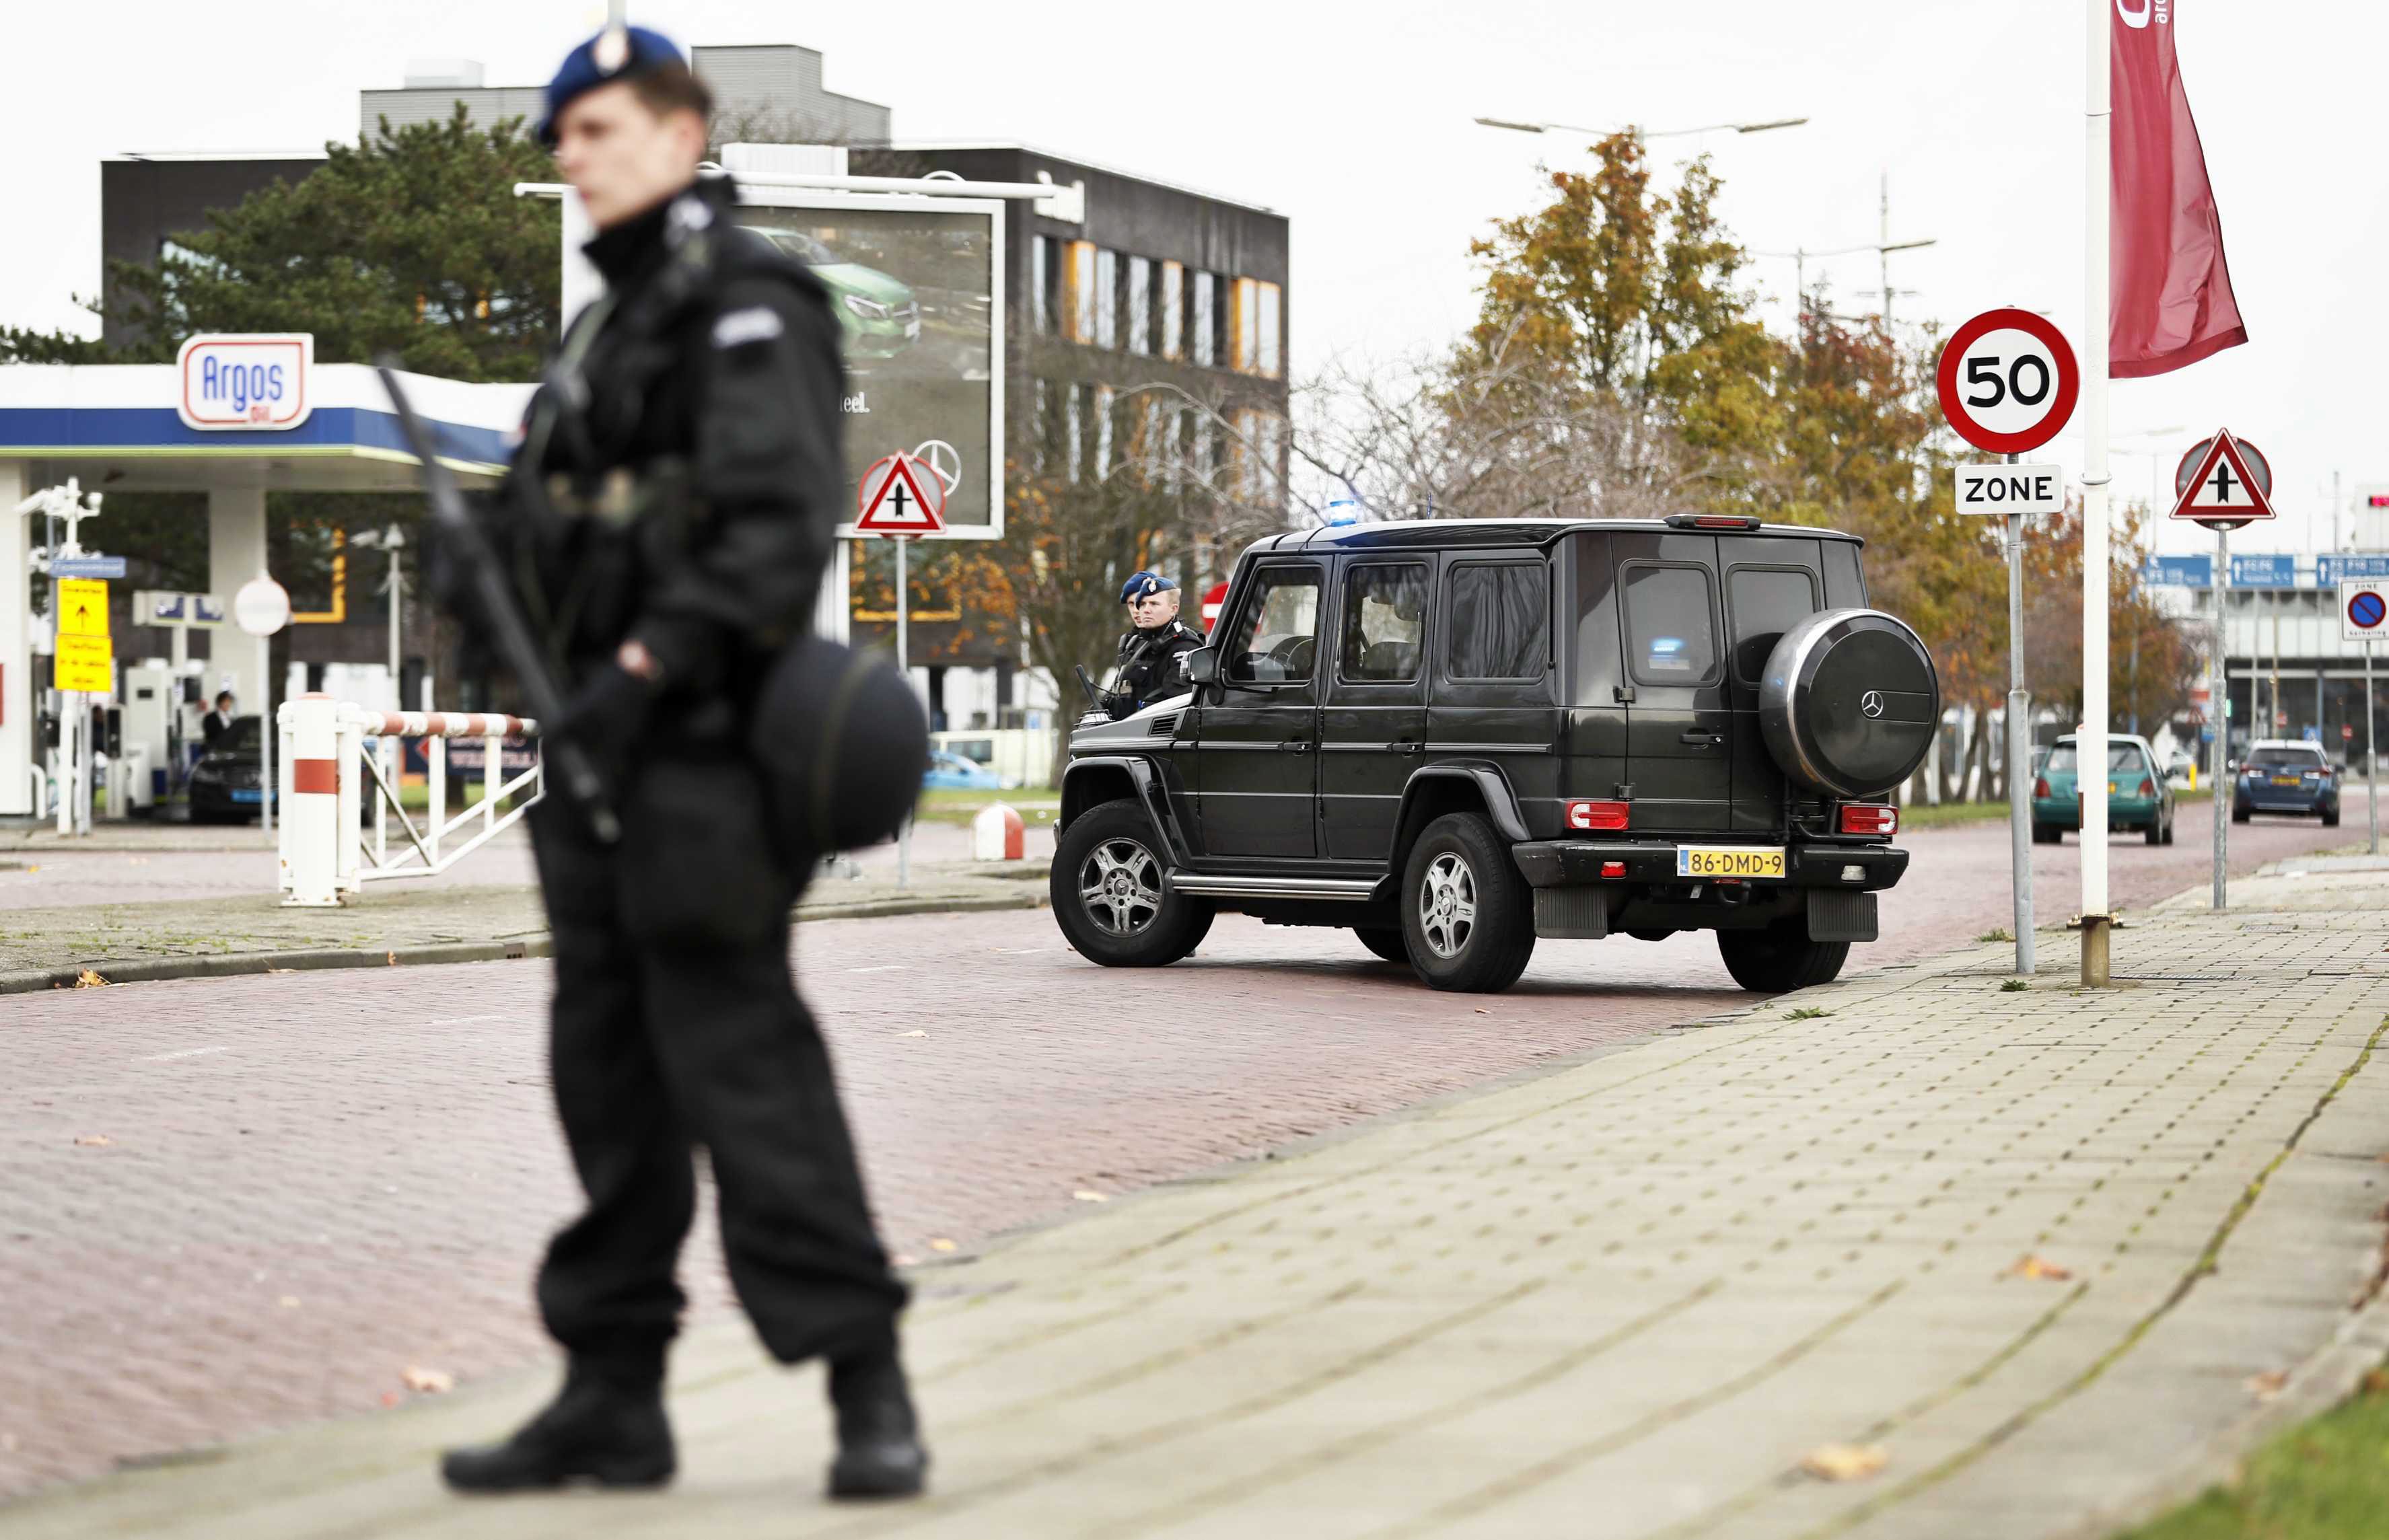 Συνελήφθη στο Ρότερνταμ ύποπτος για τρομοκρατία